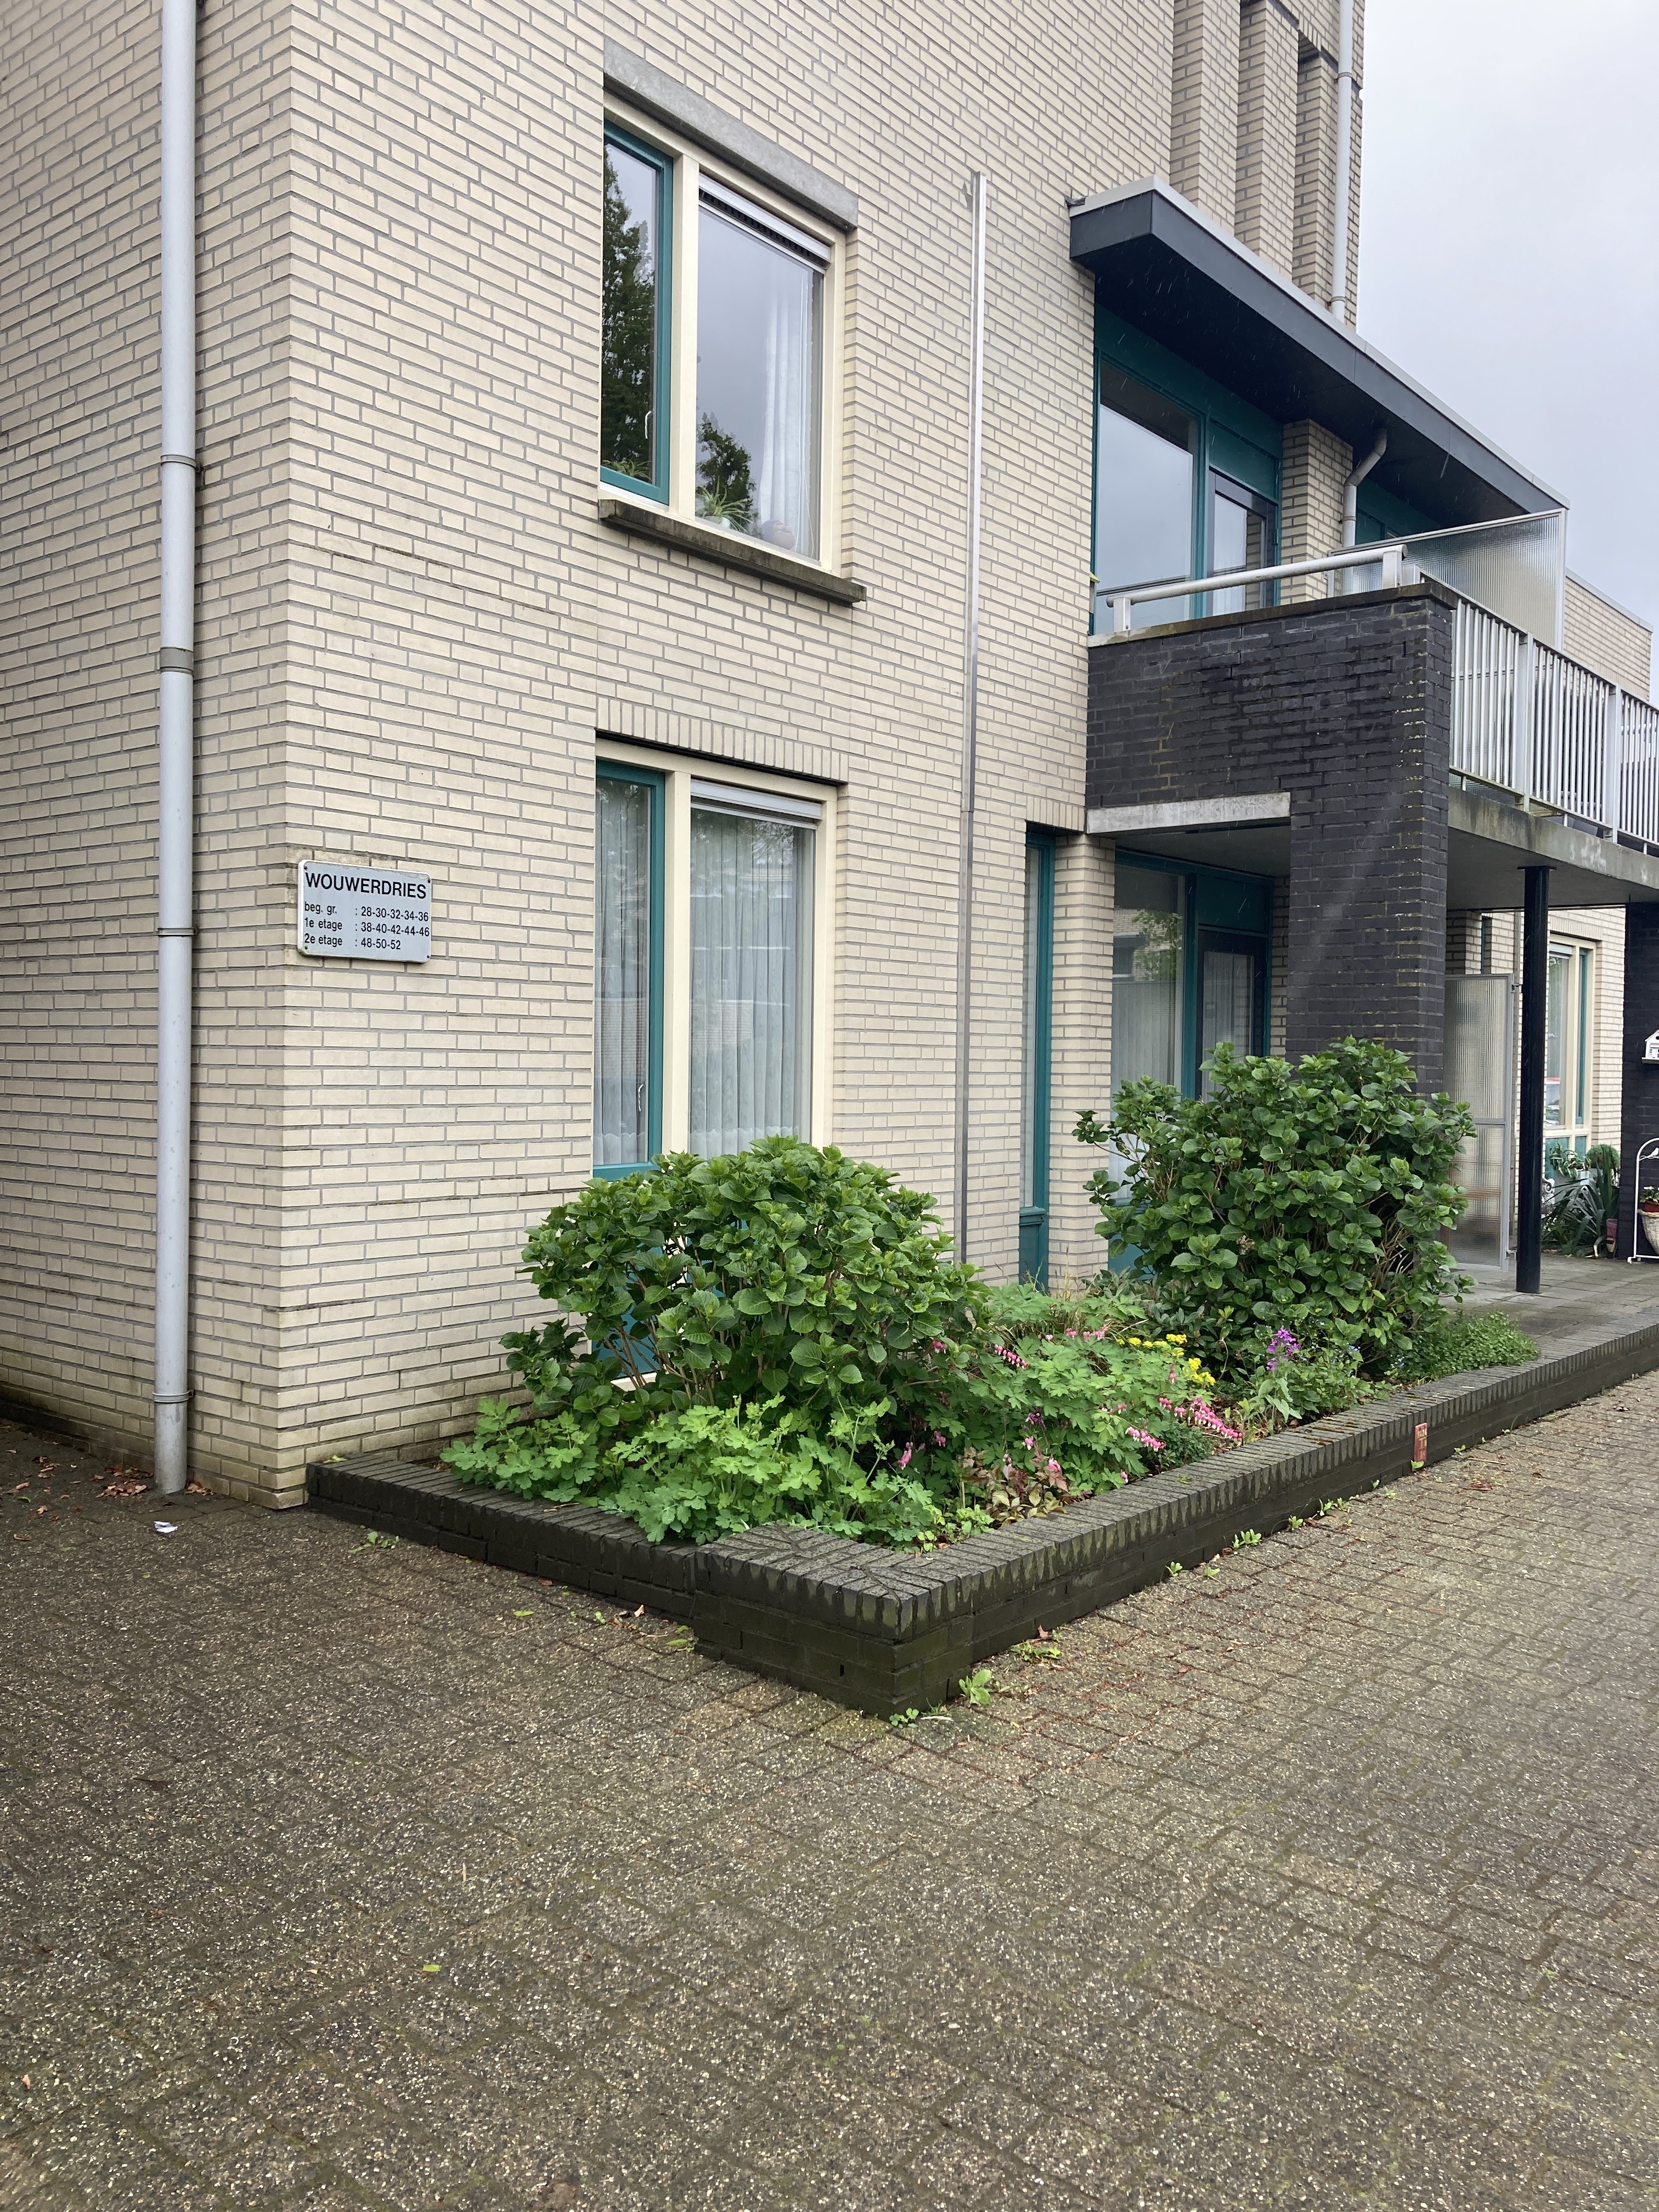 Wouwerdries 30, 5081 VX Hilvarenbeek, Nederland